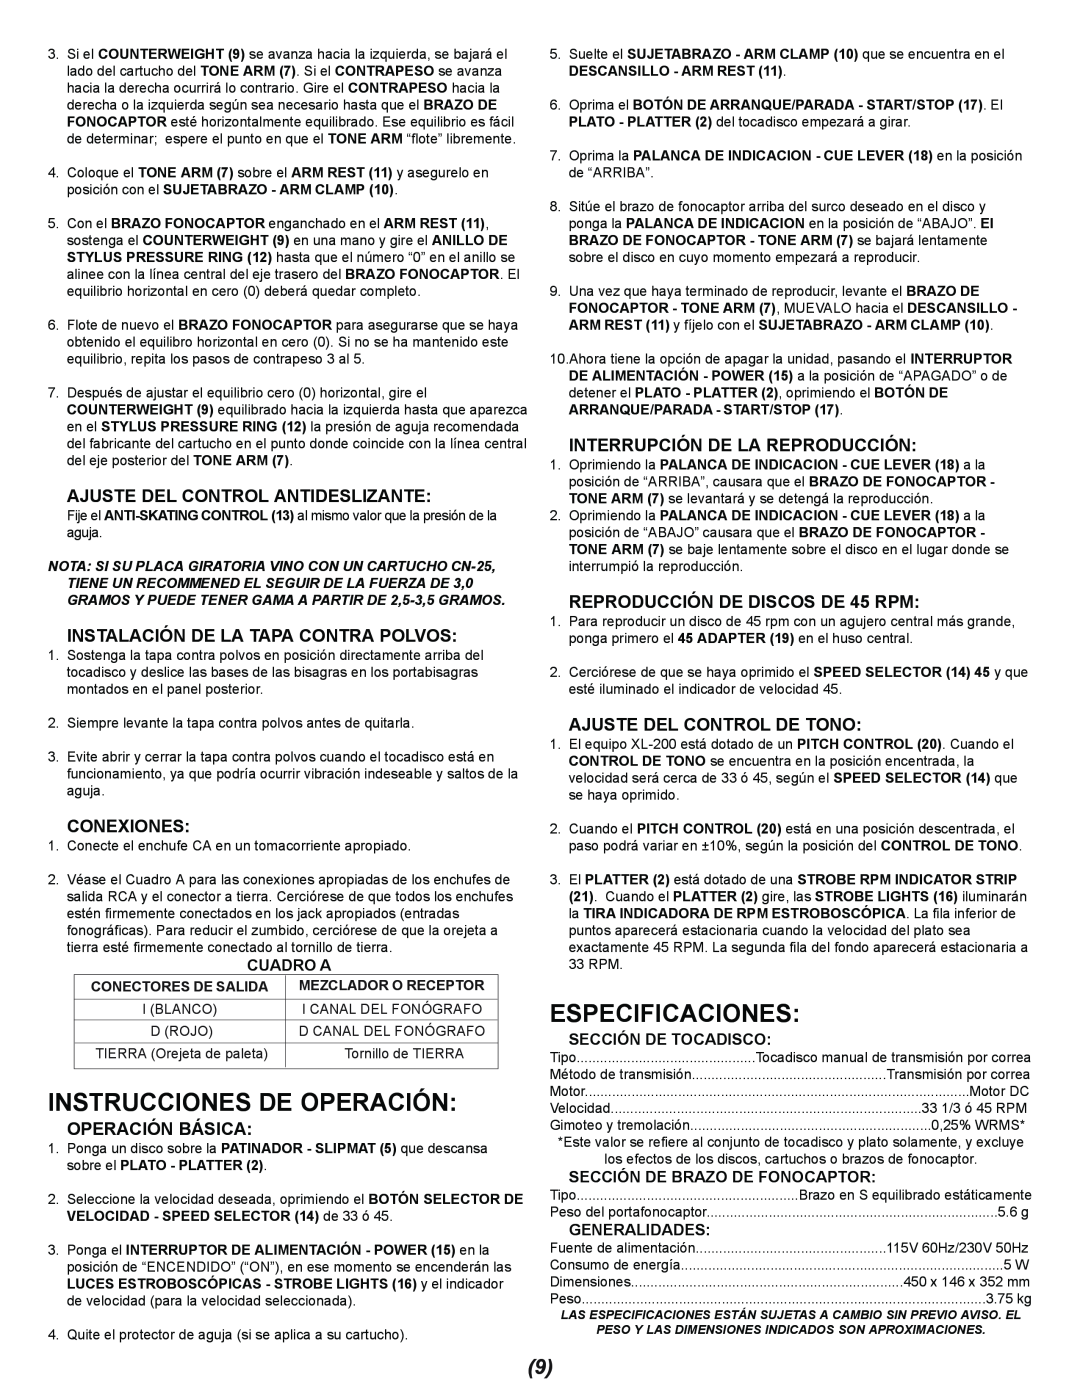 Gemini XL-200 manual Instrucciones De Operación, Especificaciones, Ajuste Del Control Antideslizante, Conexiones, Cuadro A 